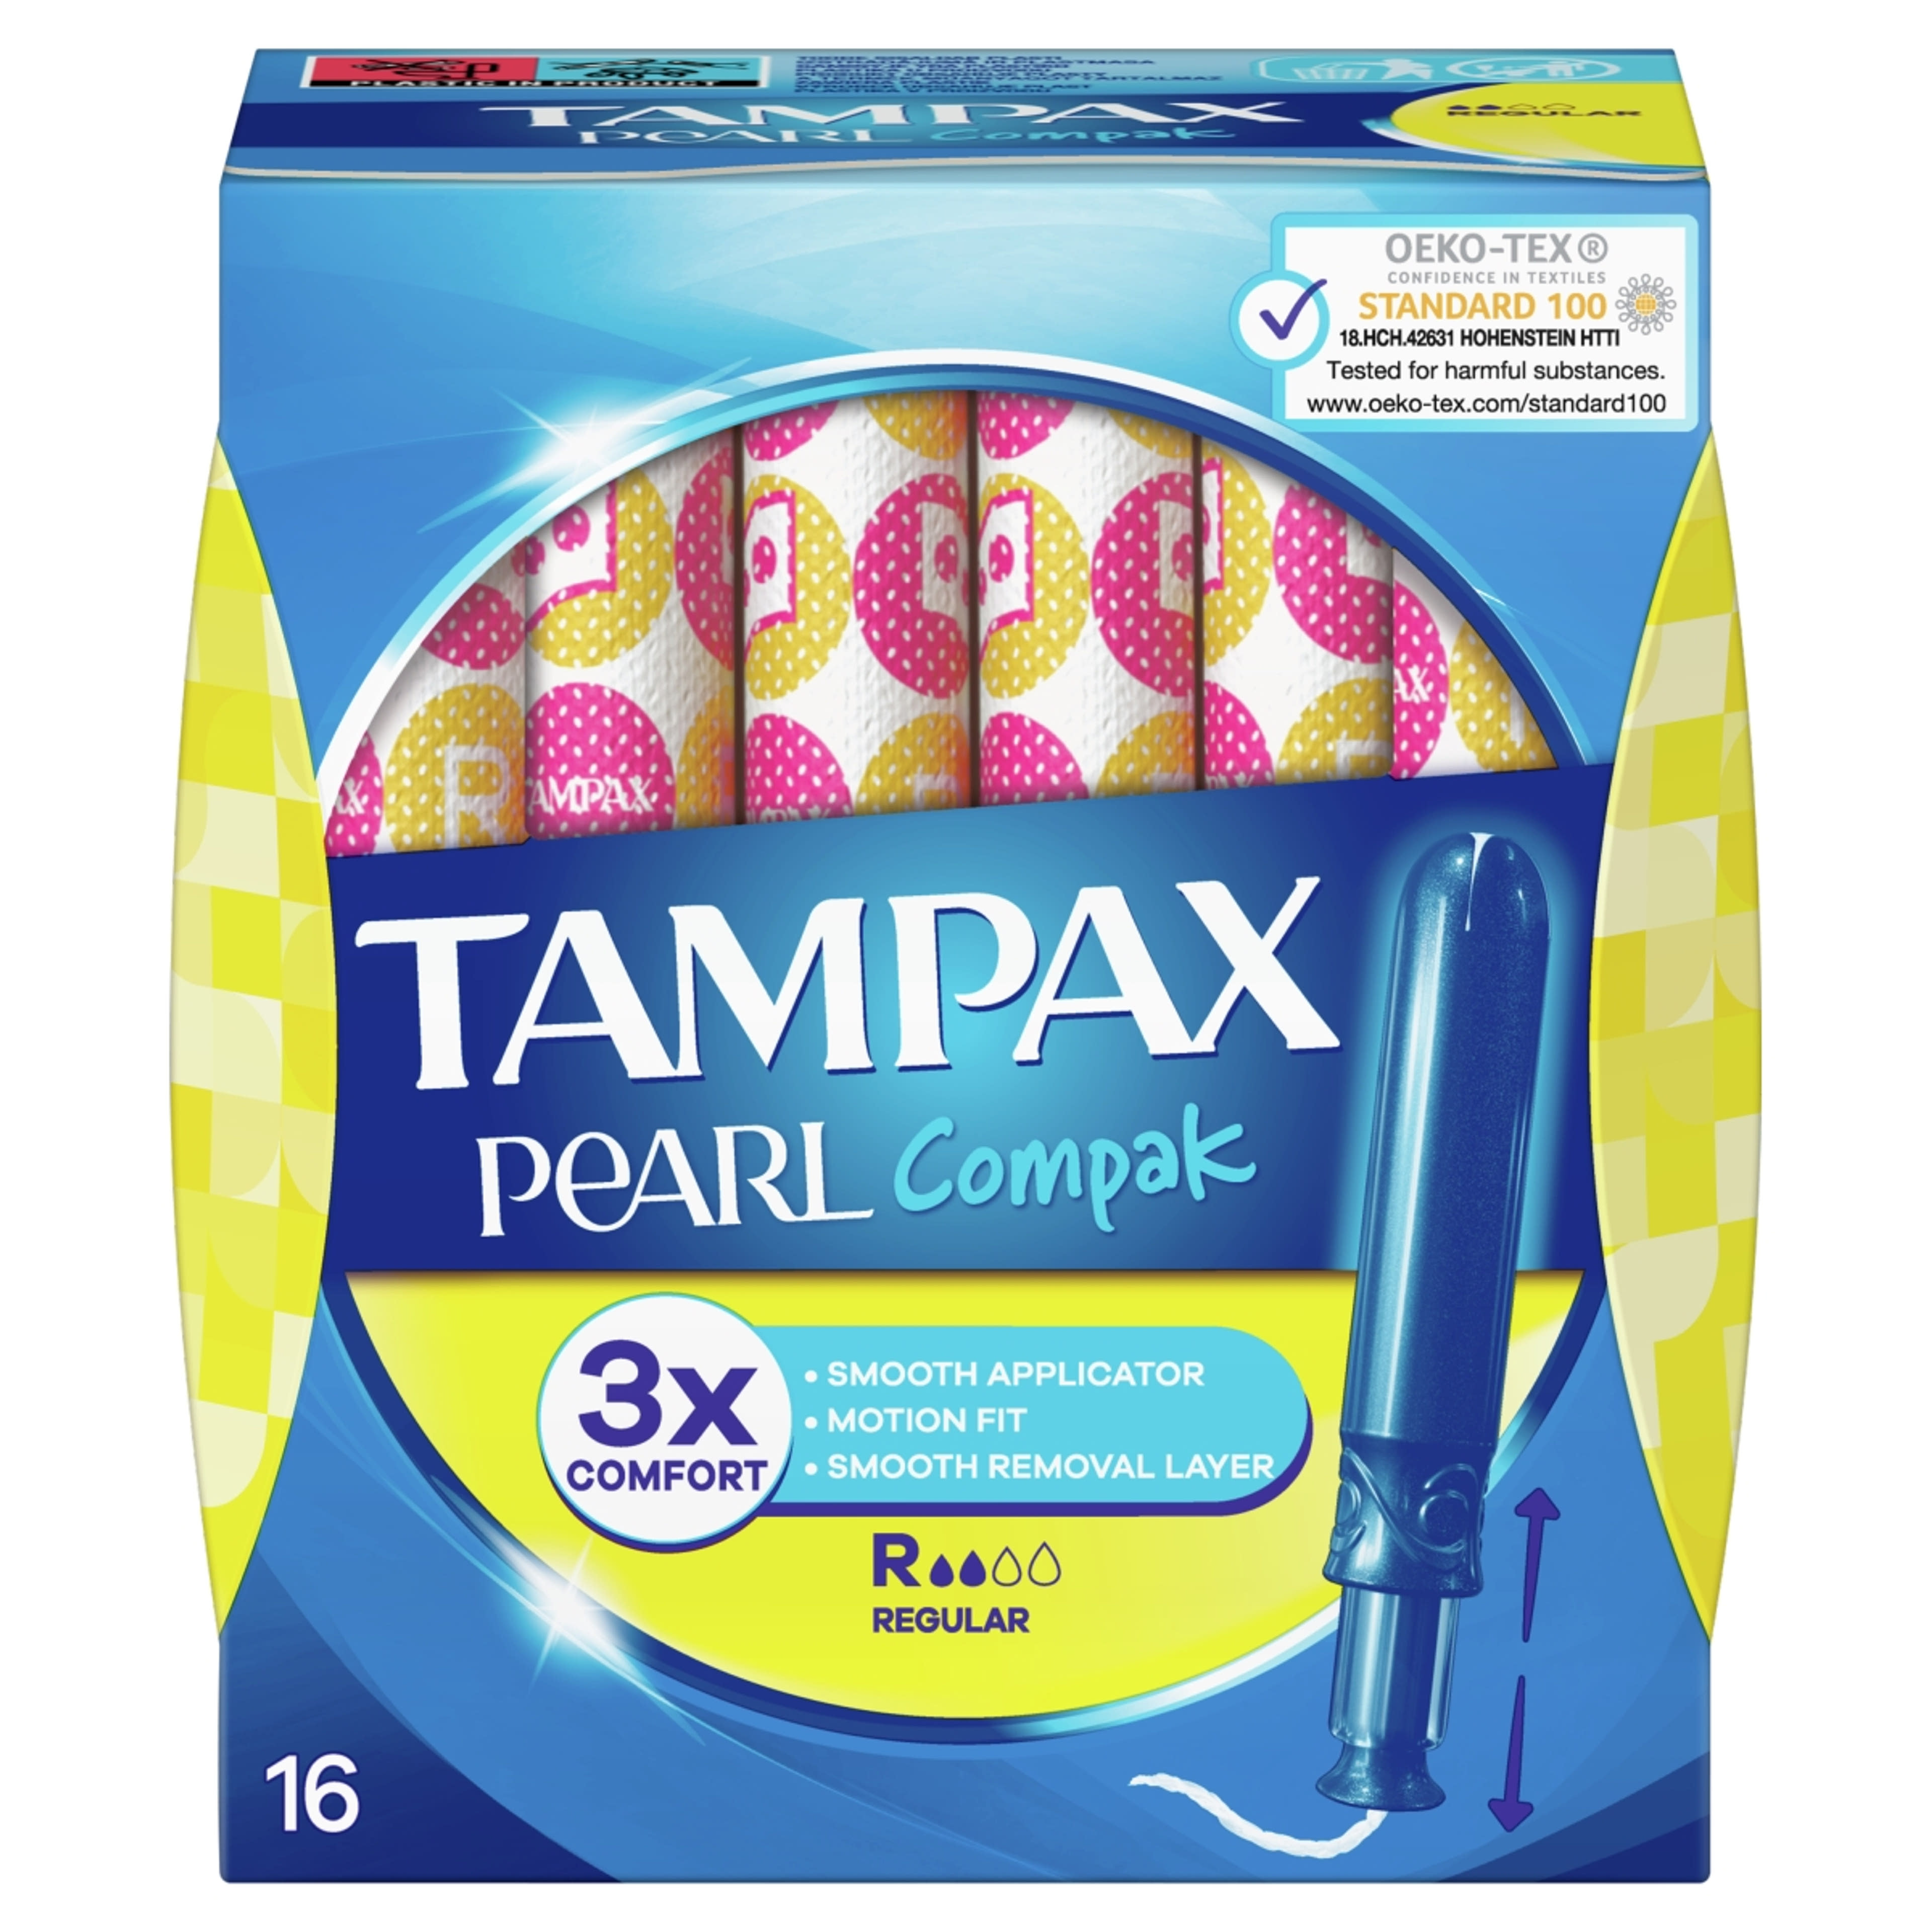 Tampax tampon compak pearl regular - 16 db